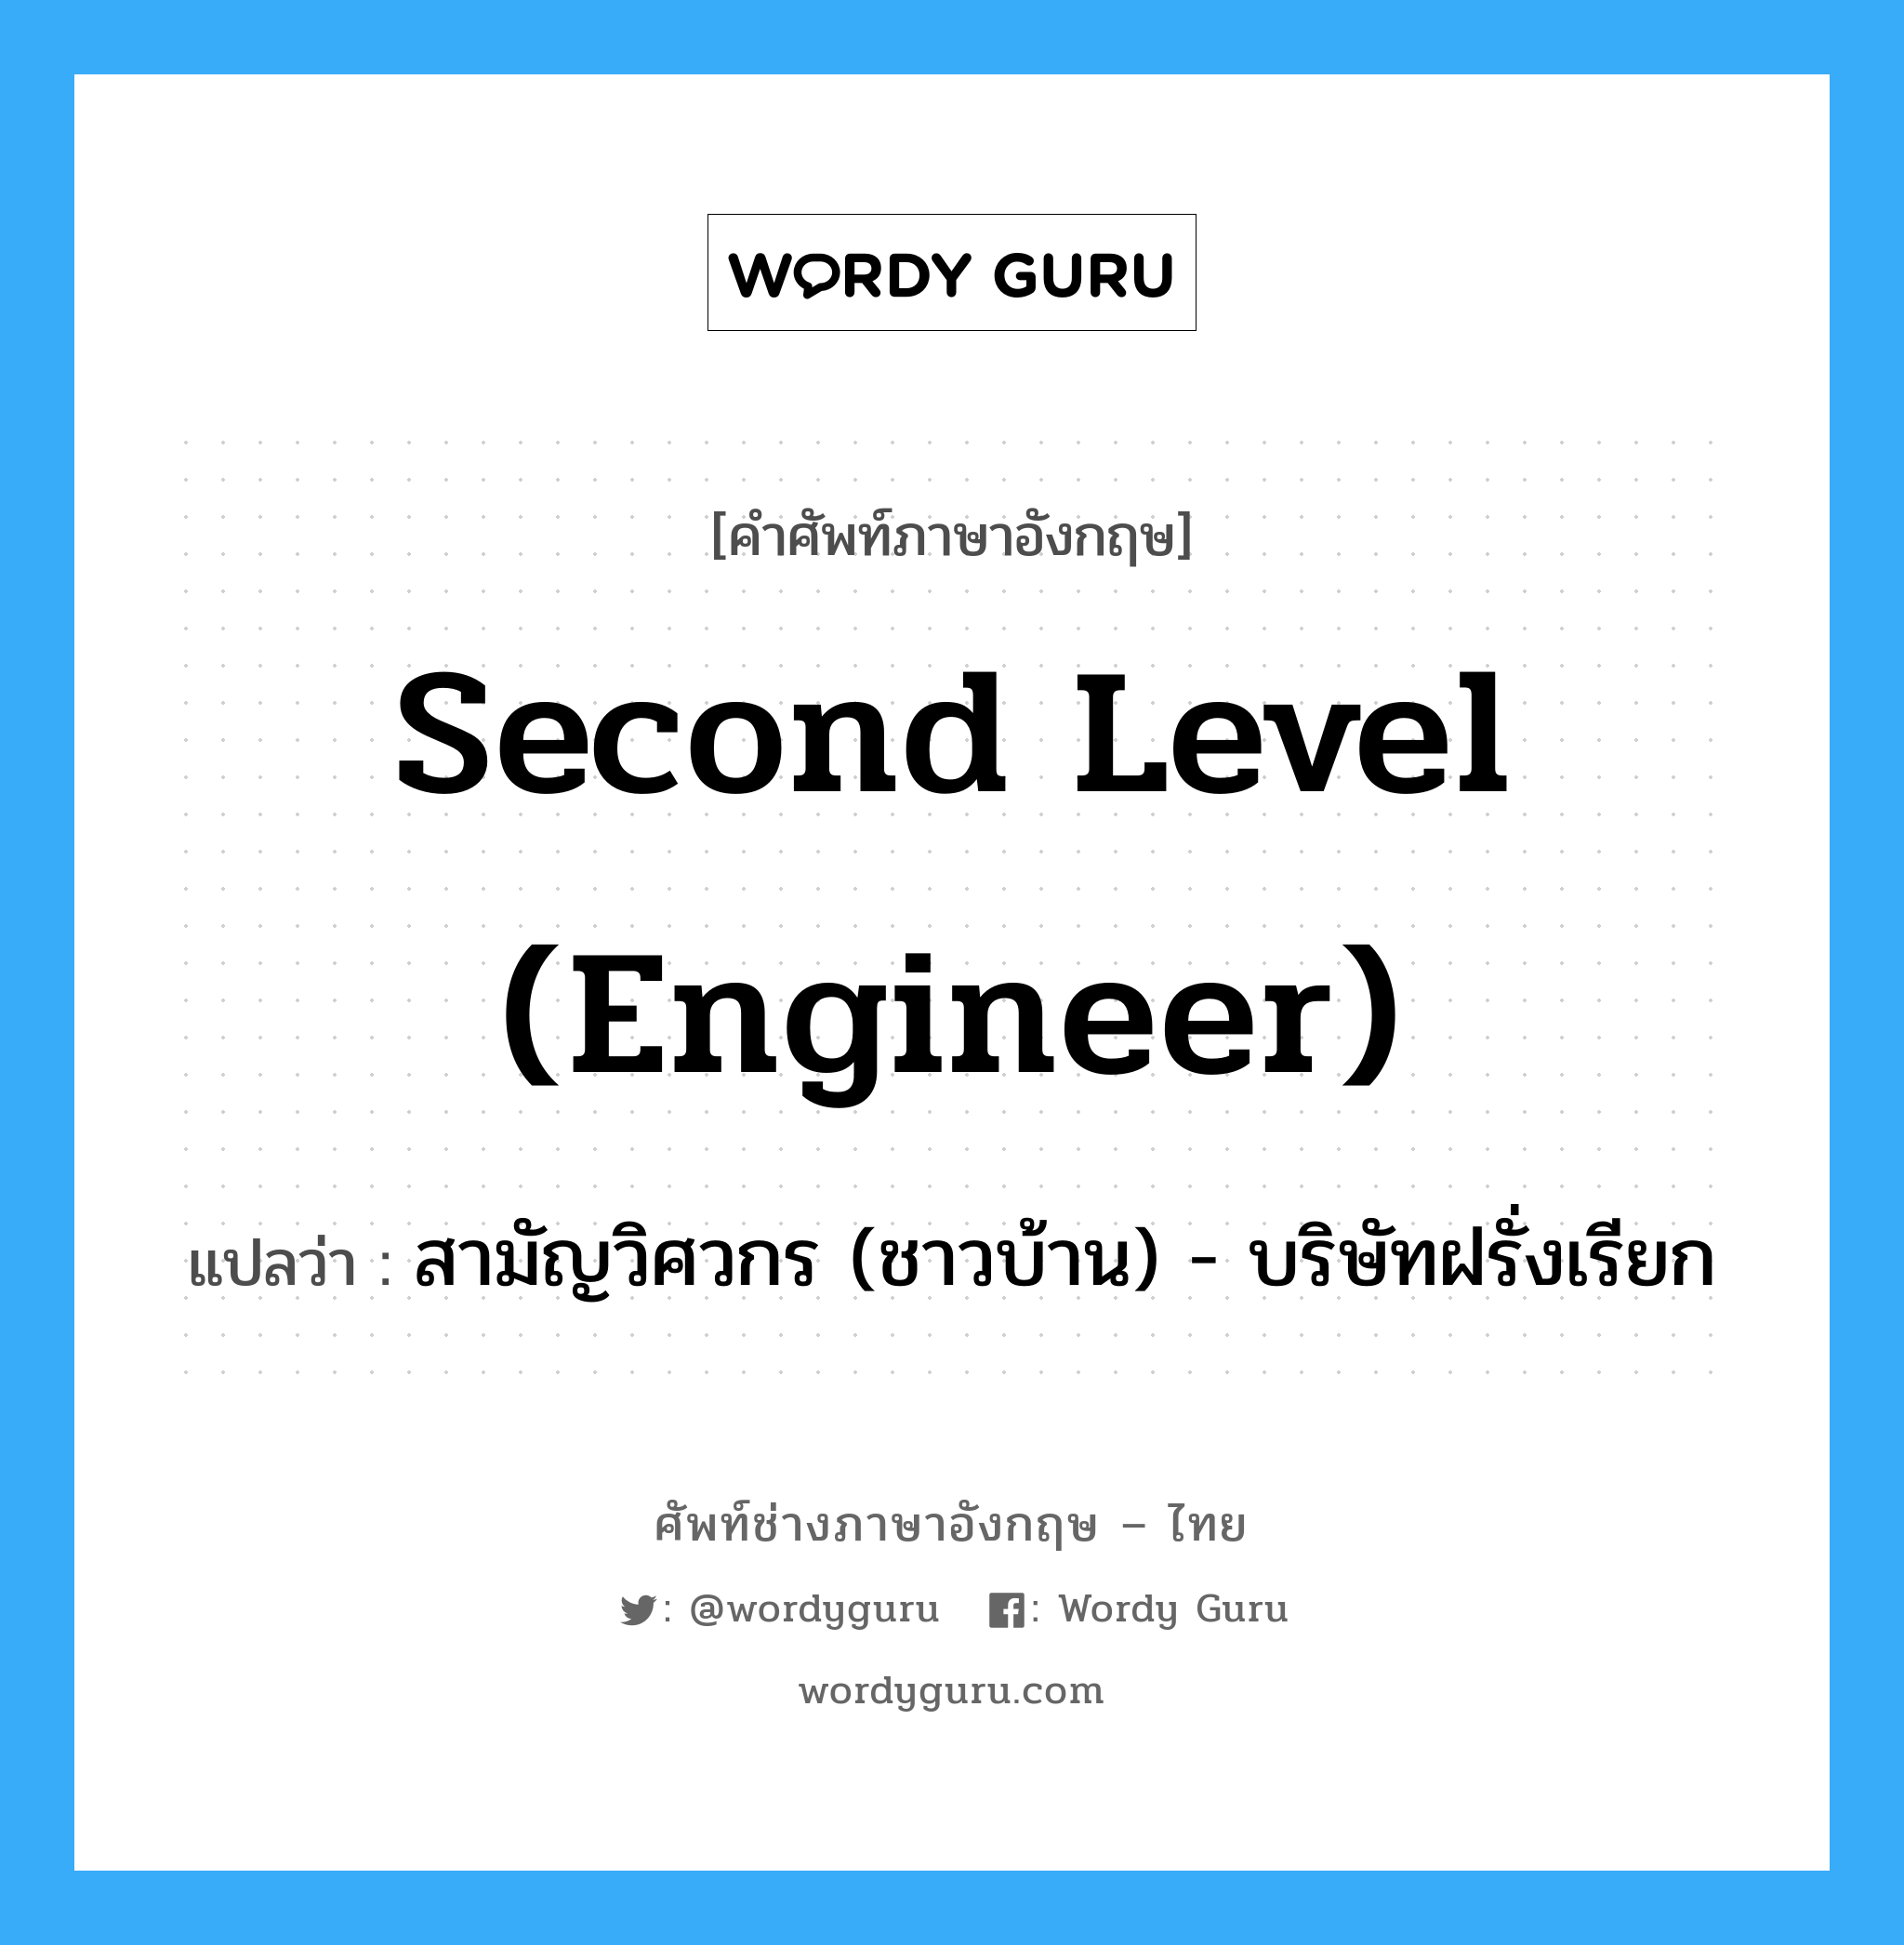 Second level (engineer) แปลว่า?, คำศัพท์ช่างภาษาอังกฤษ - ไทย Second level (engineer) คำศัพท์ภาษาอังกฤษ Second level (engineer) แปลว่า สามัญวิศวกร (ชาวบ้าน) - บริษัทฝรั่งเรียก